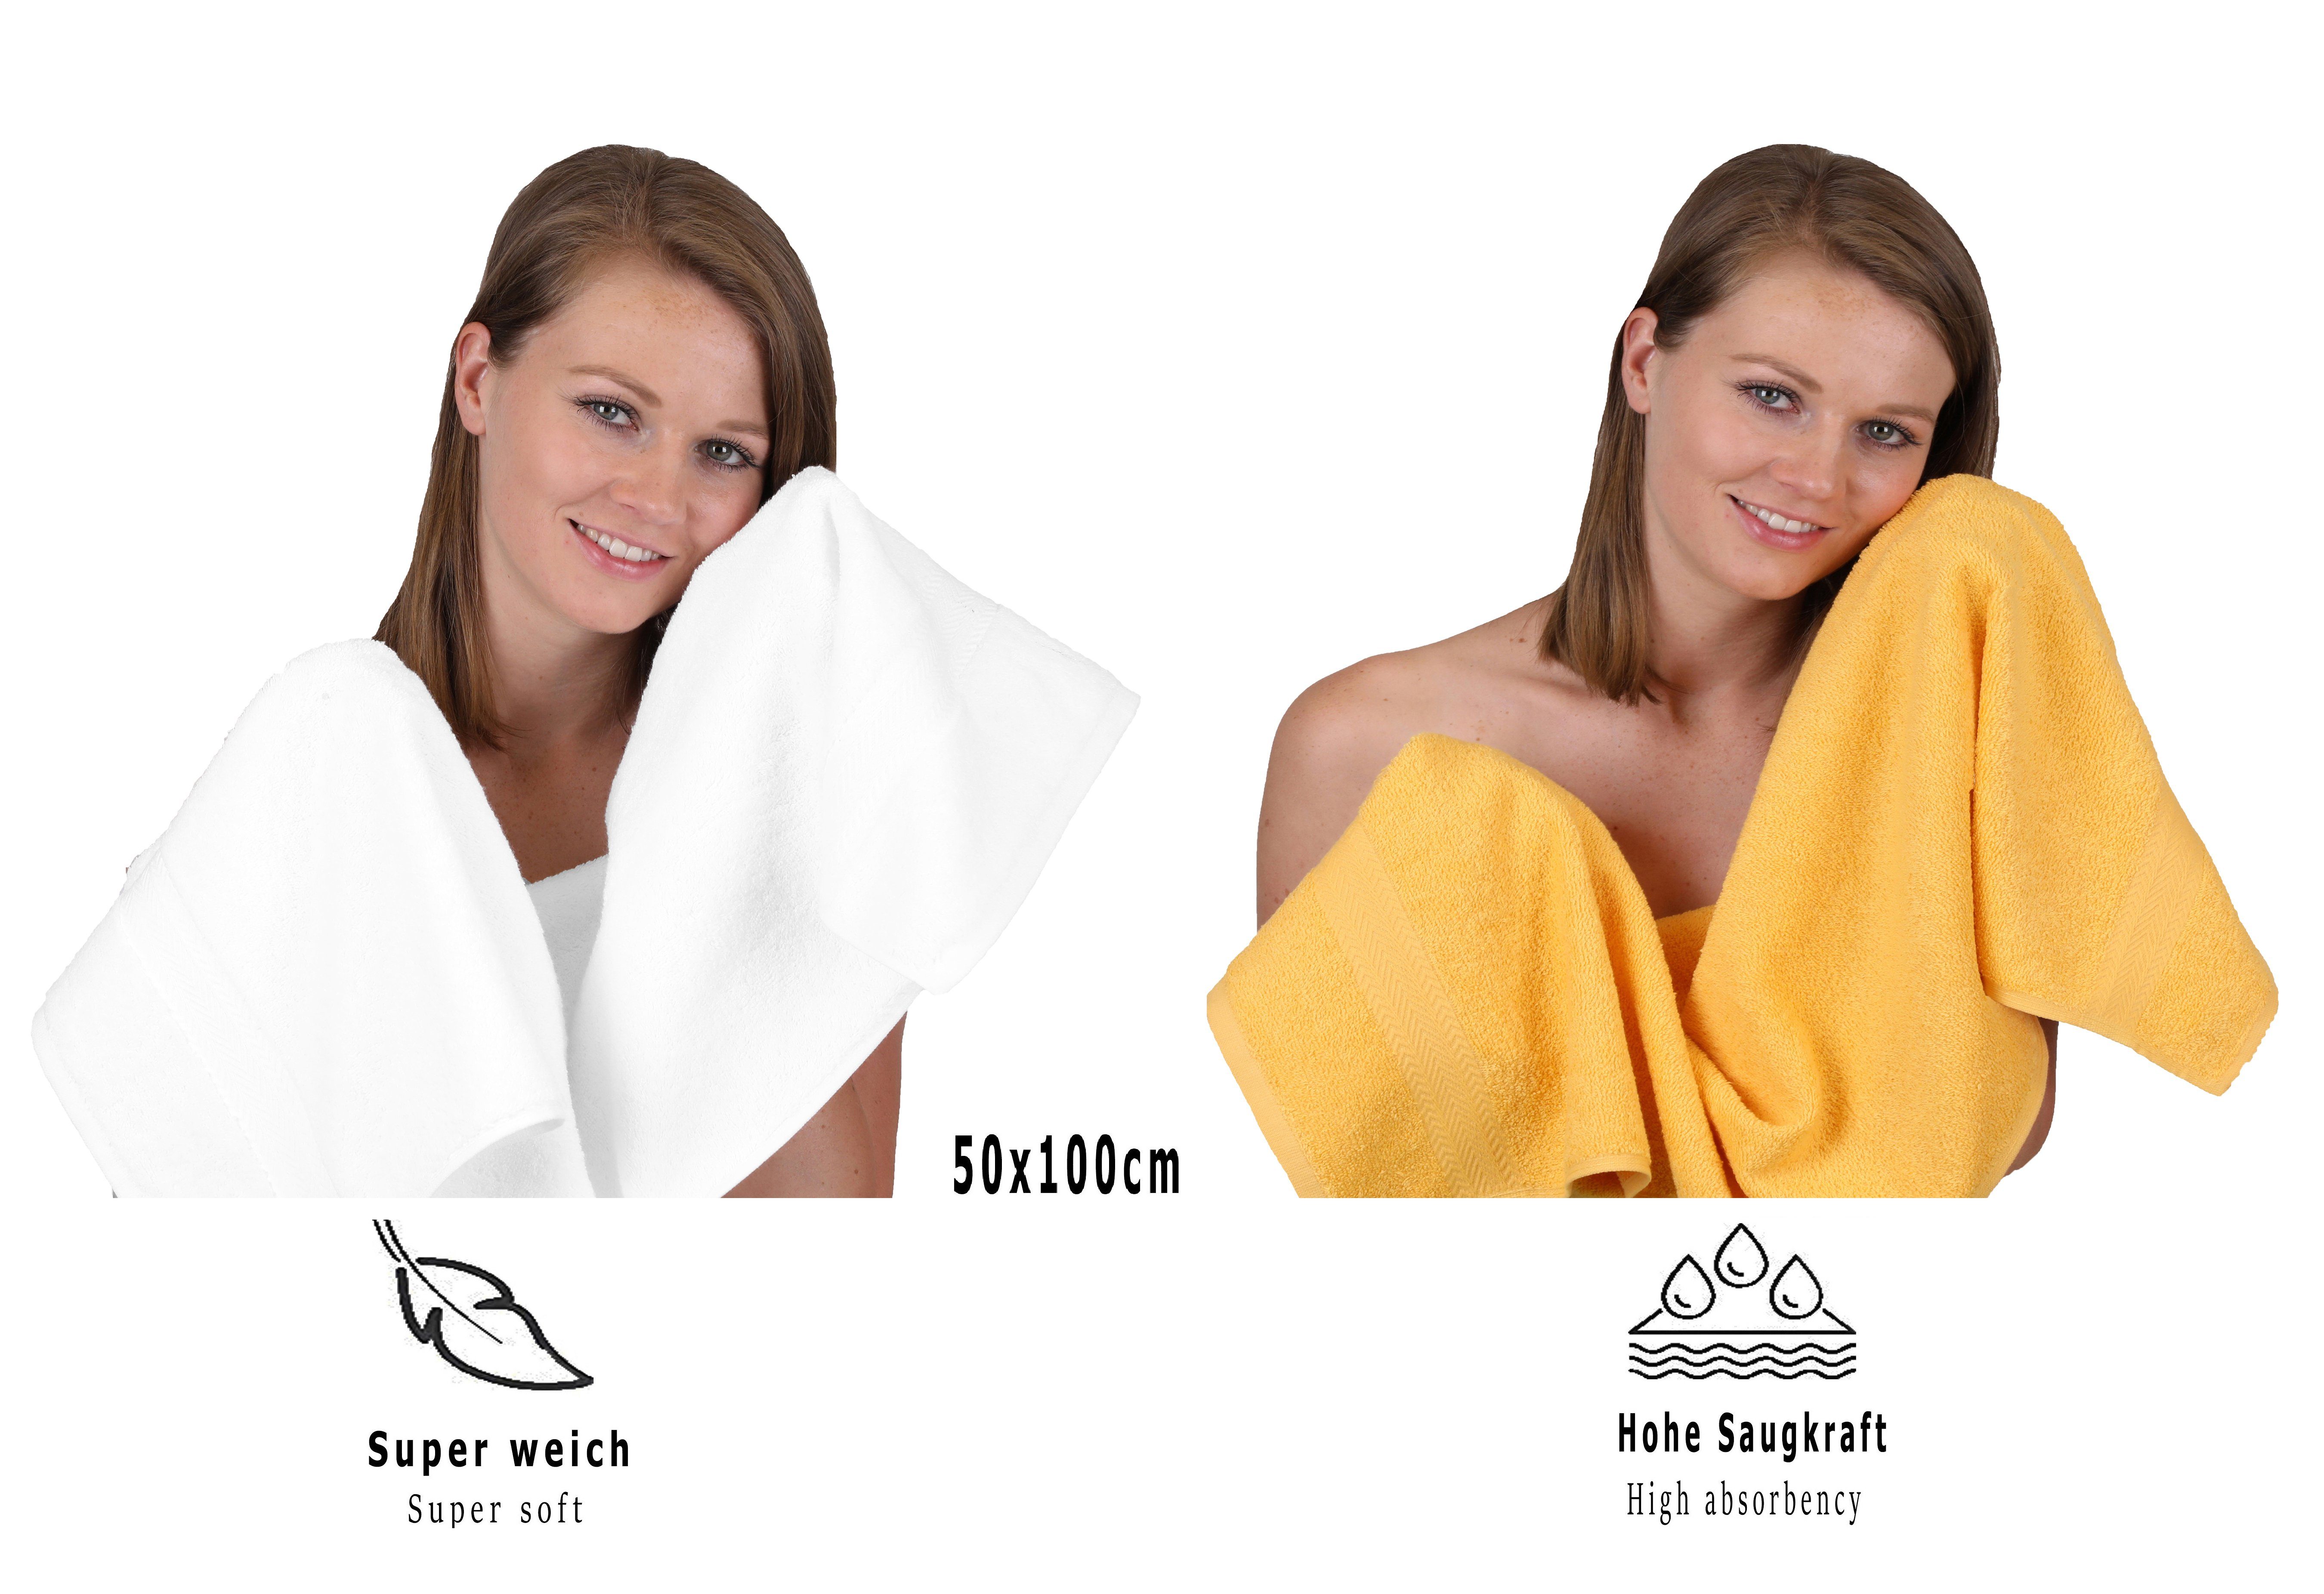 12-TLG. (12-tlg) Set Baumwolle, 100% Handtuch Handtuch Farbe weiß/honiggelb, Premium Betz Set